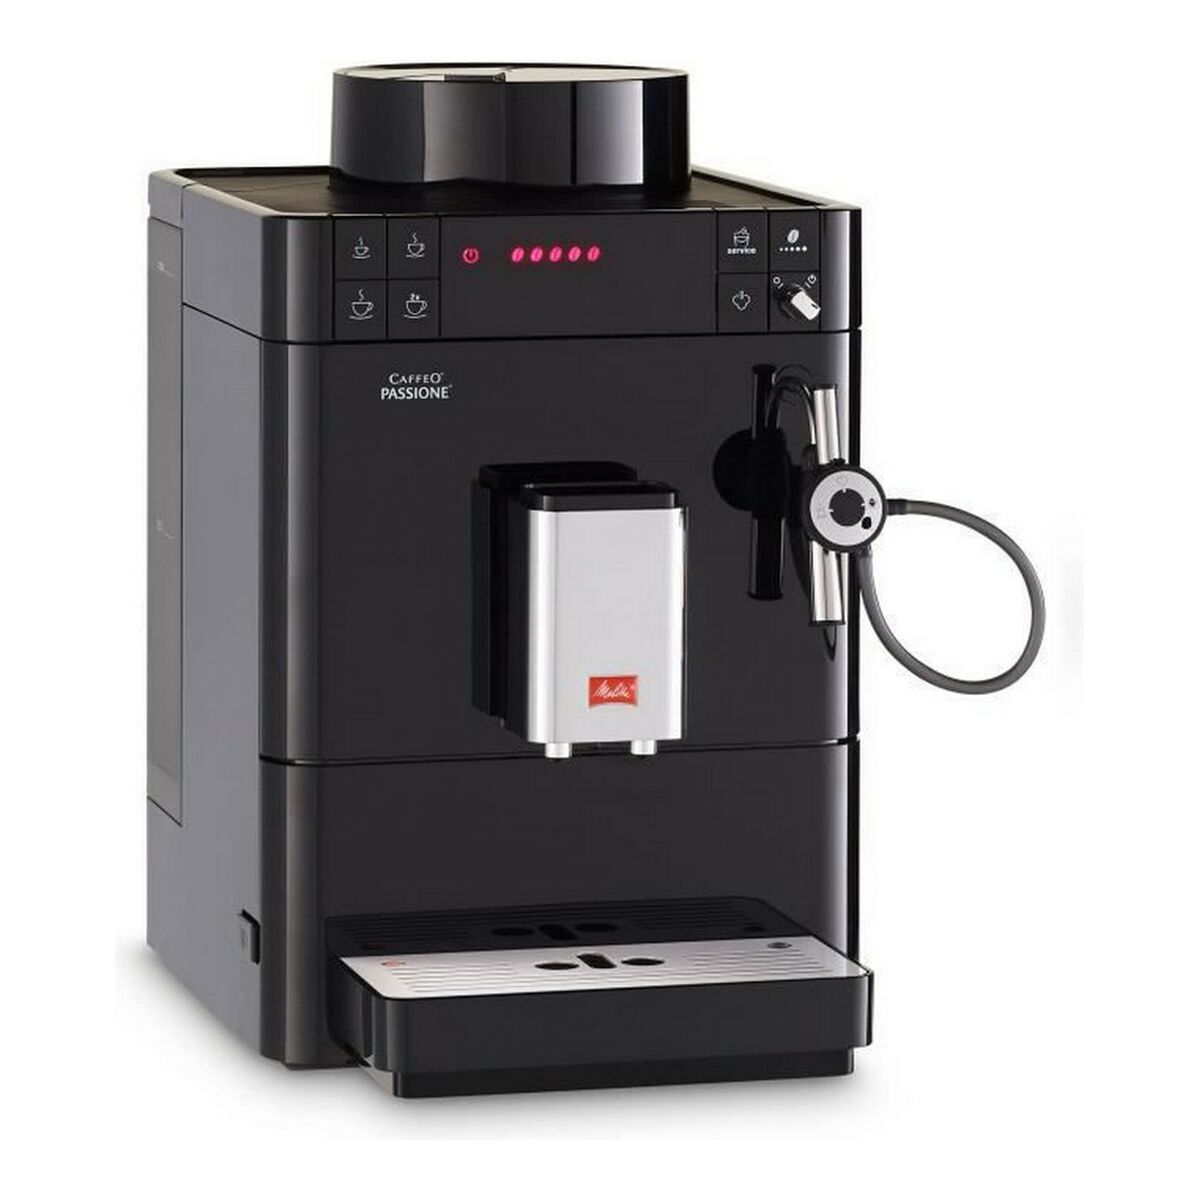 Superautomatic Coffee Maker Melitta F530-102 Black 1450 W 1,2 L